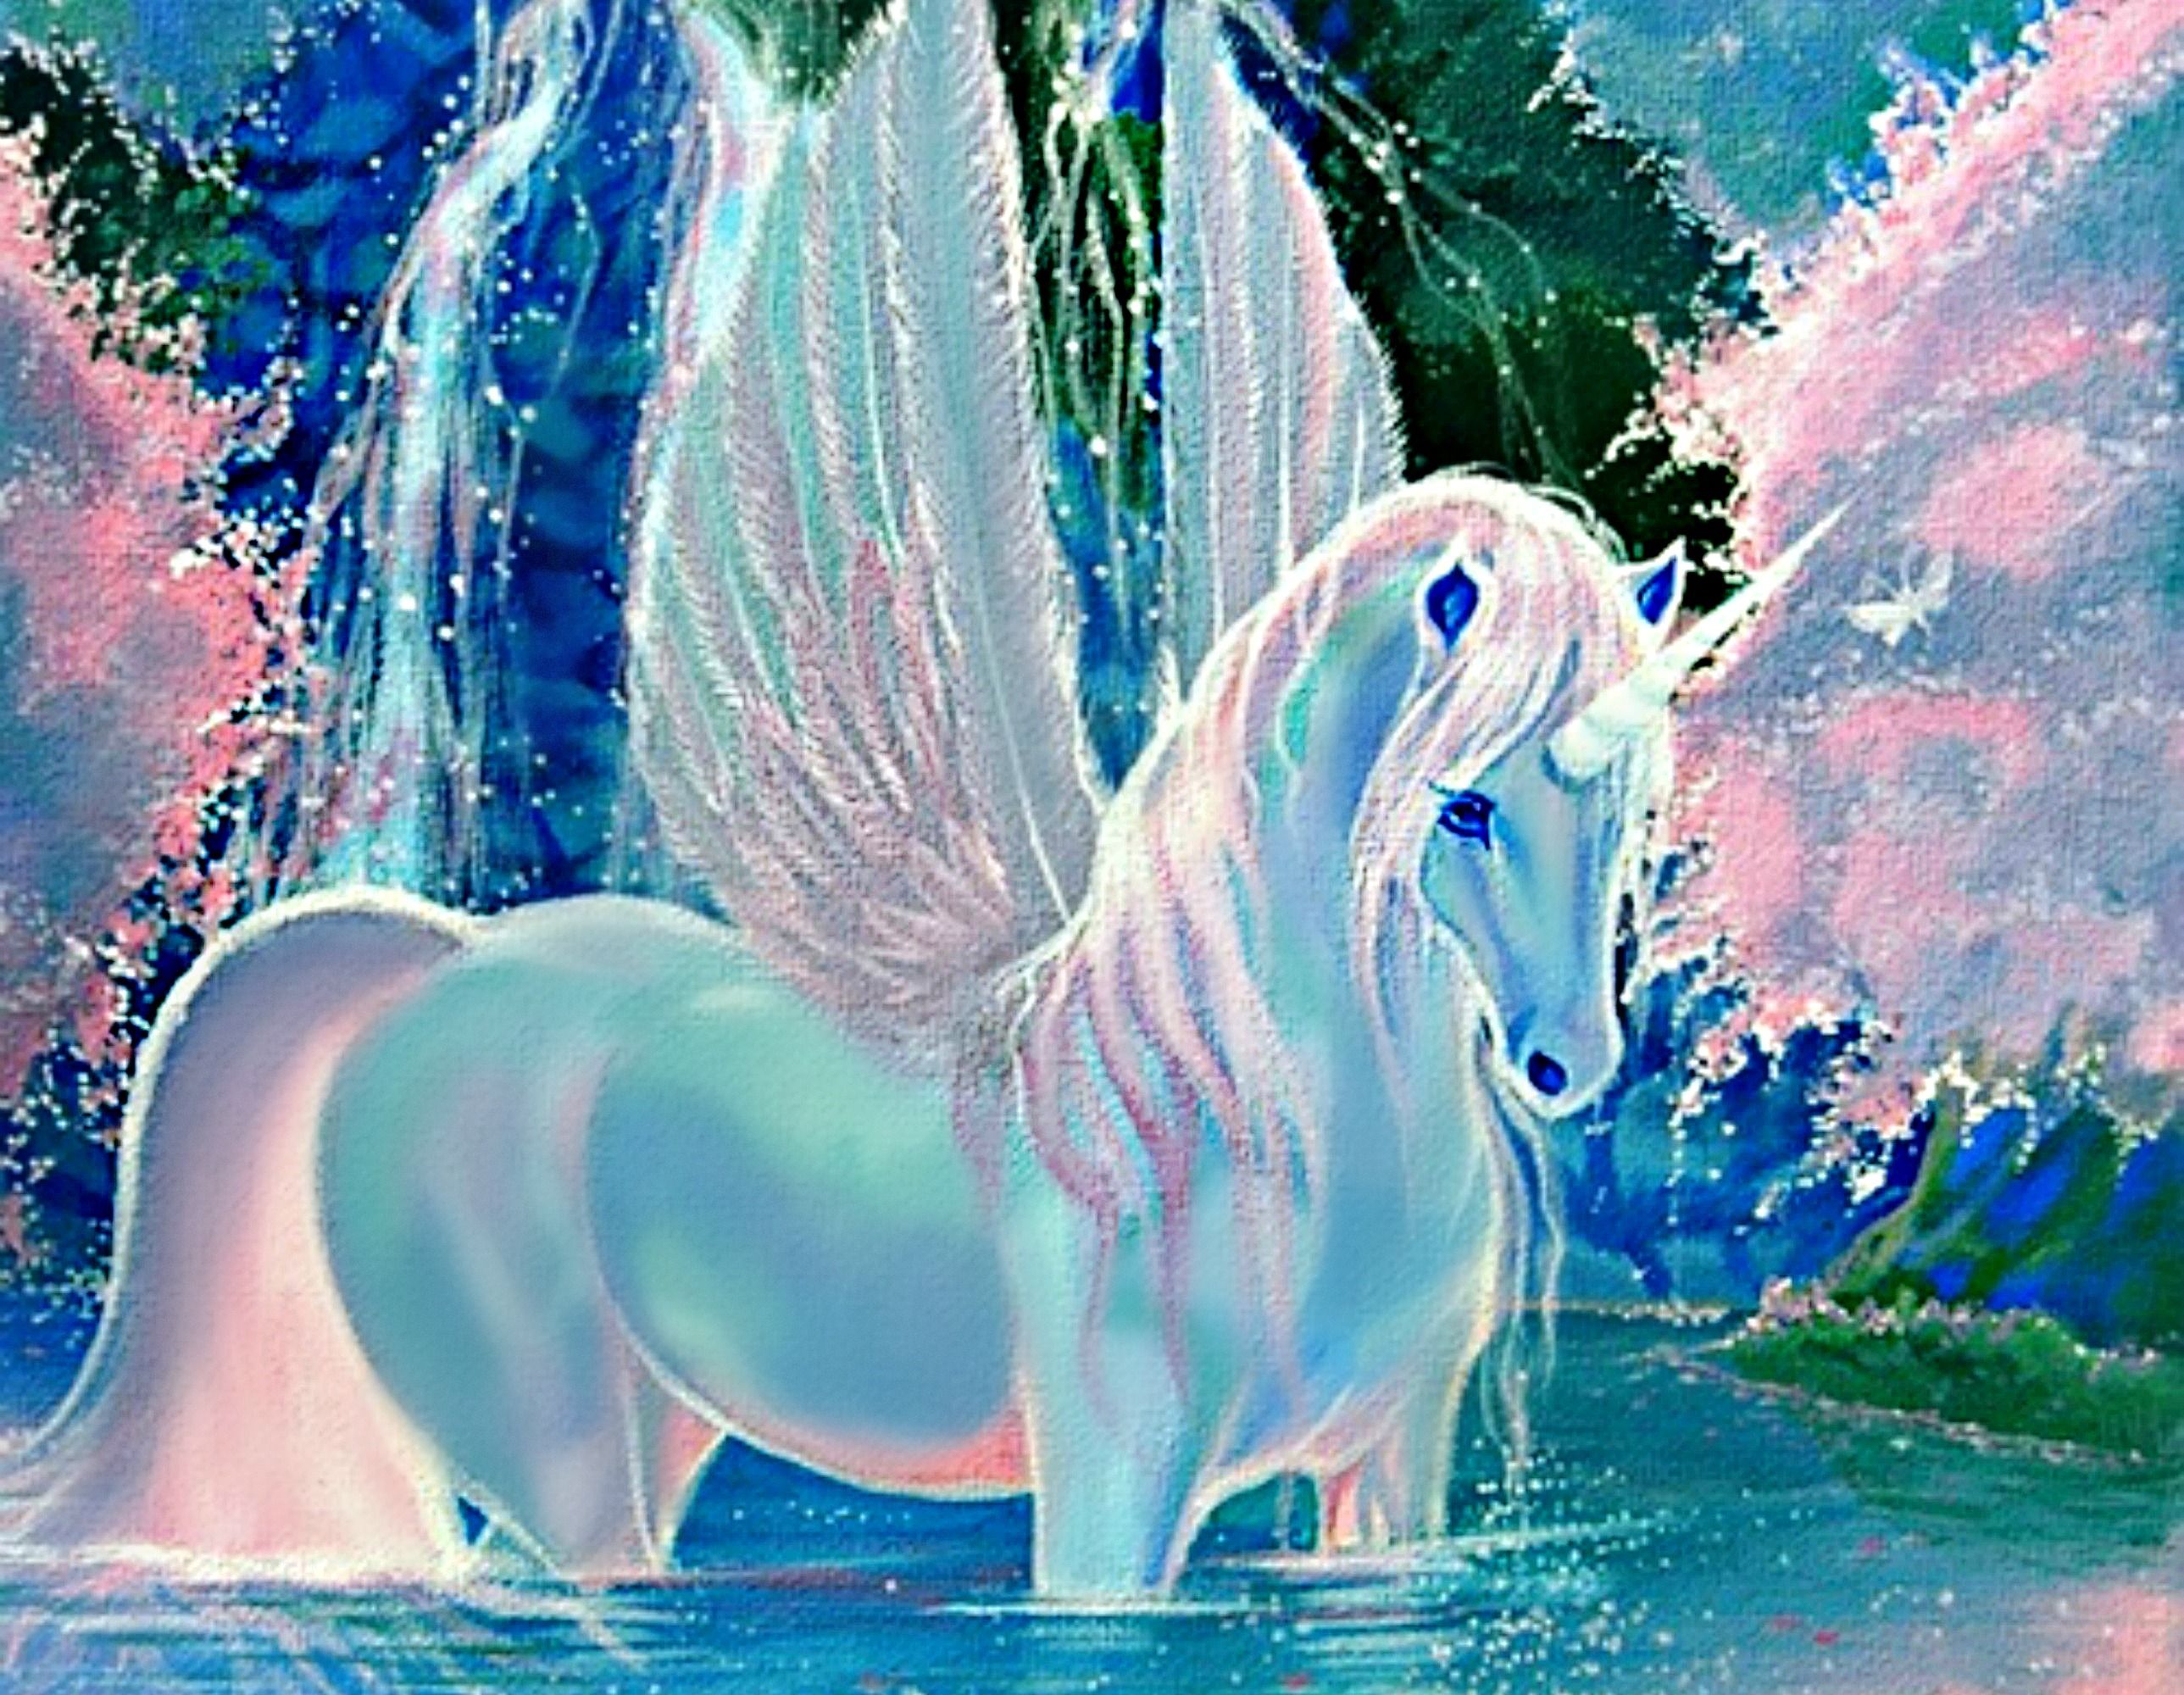 pegasus and unicorn. Unicorn wallpaper, Unicorn image, Beautiful nature wallpaper